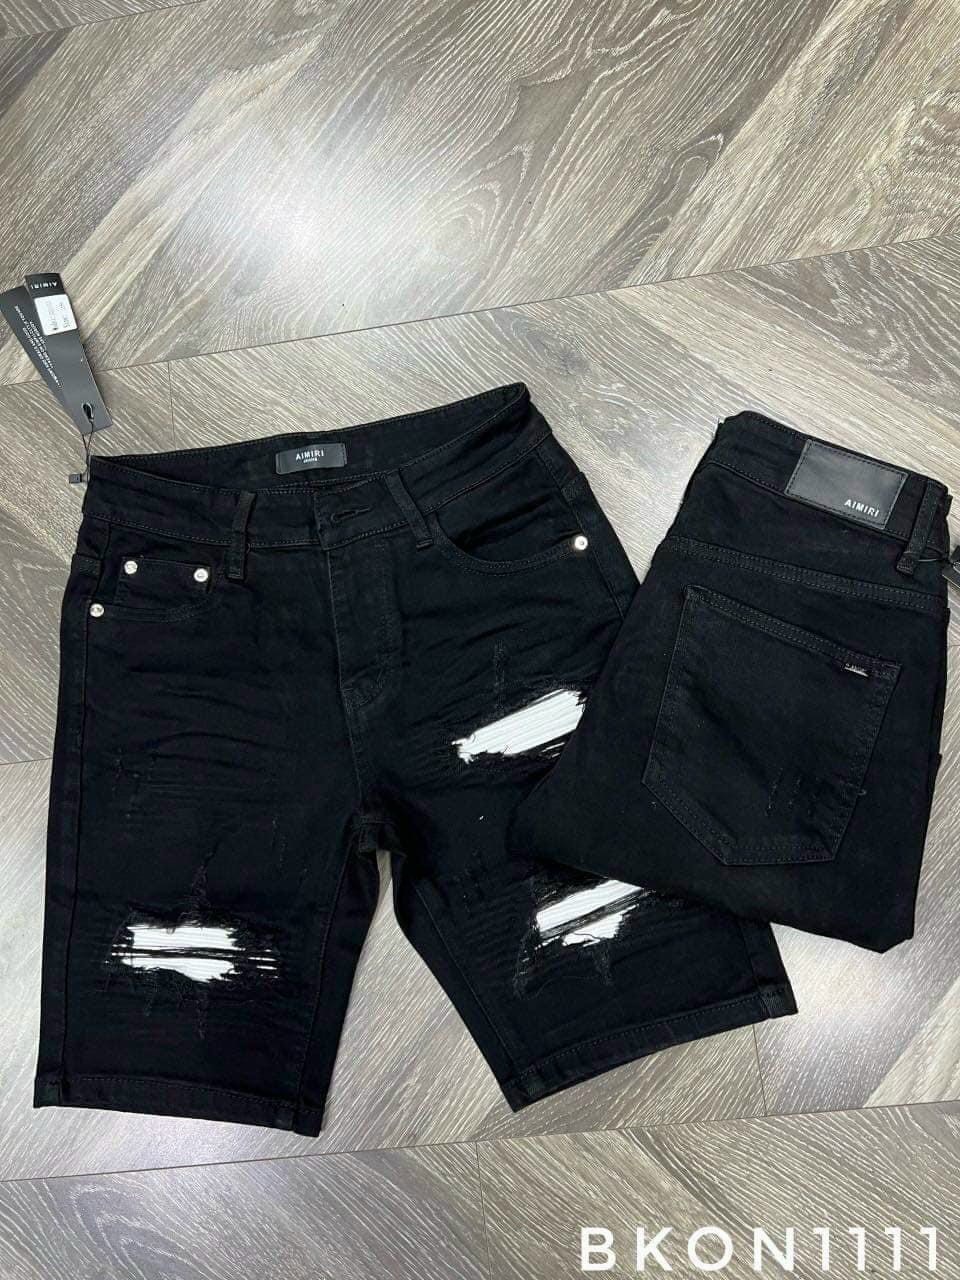 quần bò short jean nam ngắn ngố đen rách vá da đẹp mẫu mới hotform chuẩn chất jean co giãn tốt giá rẻ